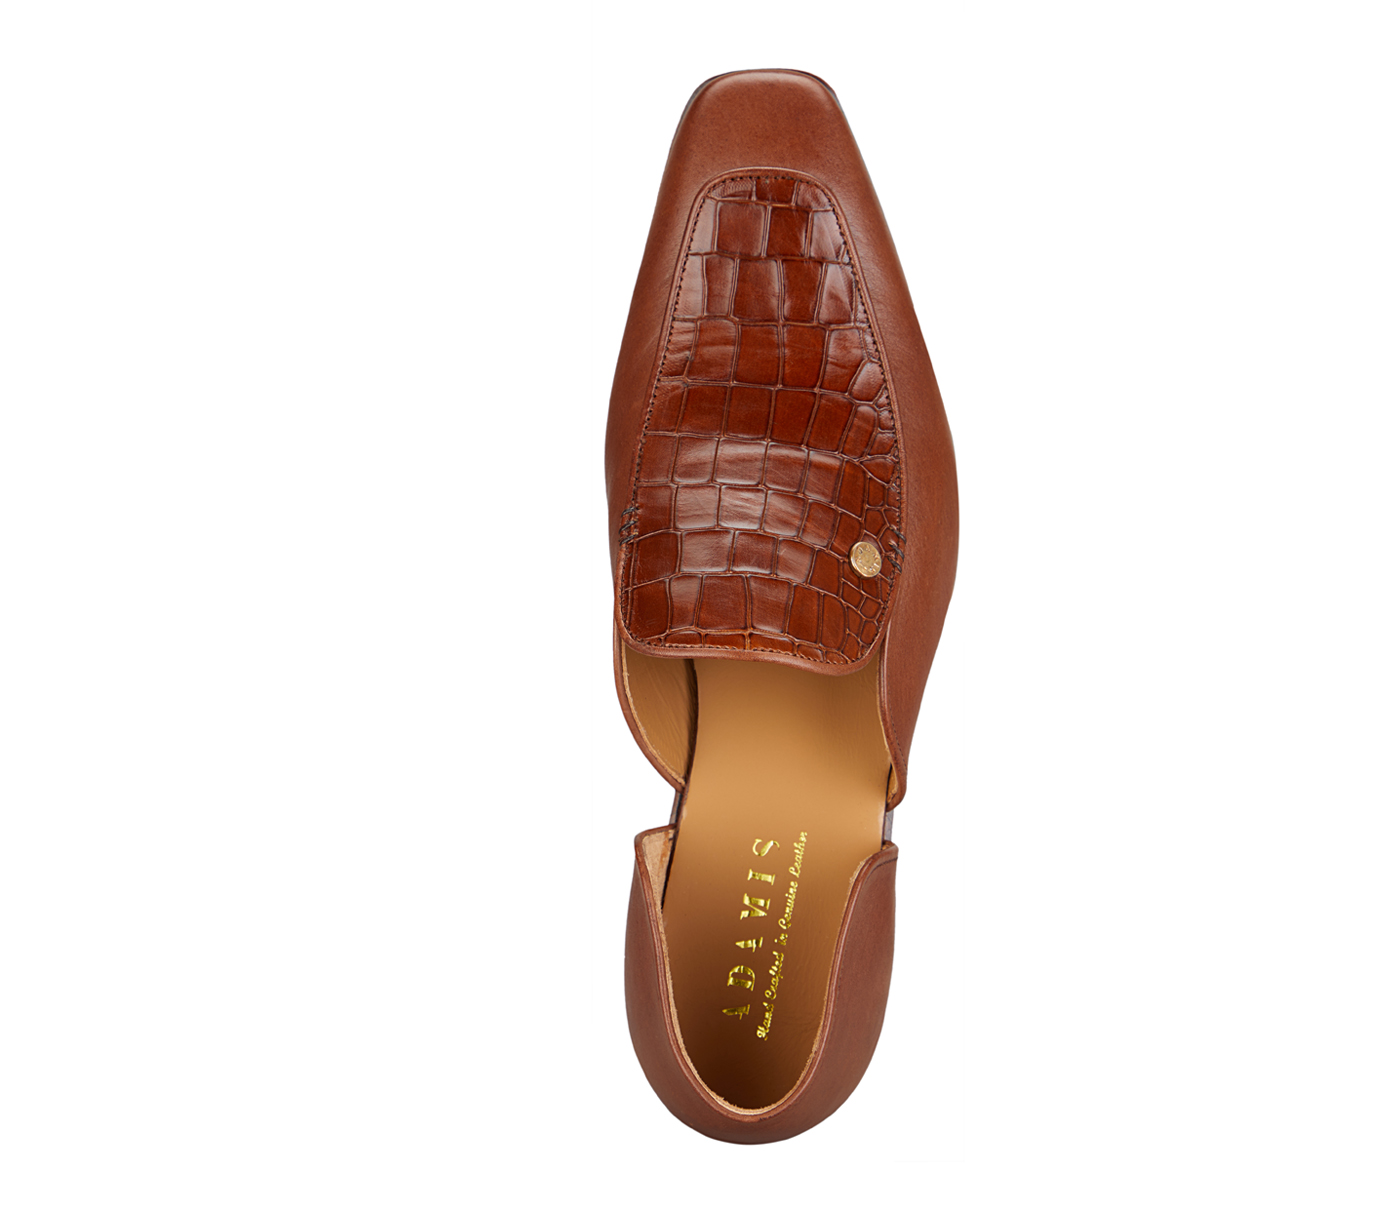 PF42-Adamis Pure Leather Footwear For Men- - Tan